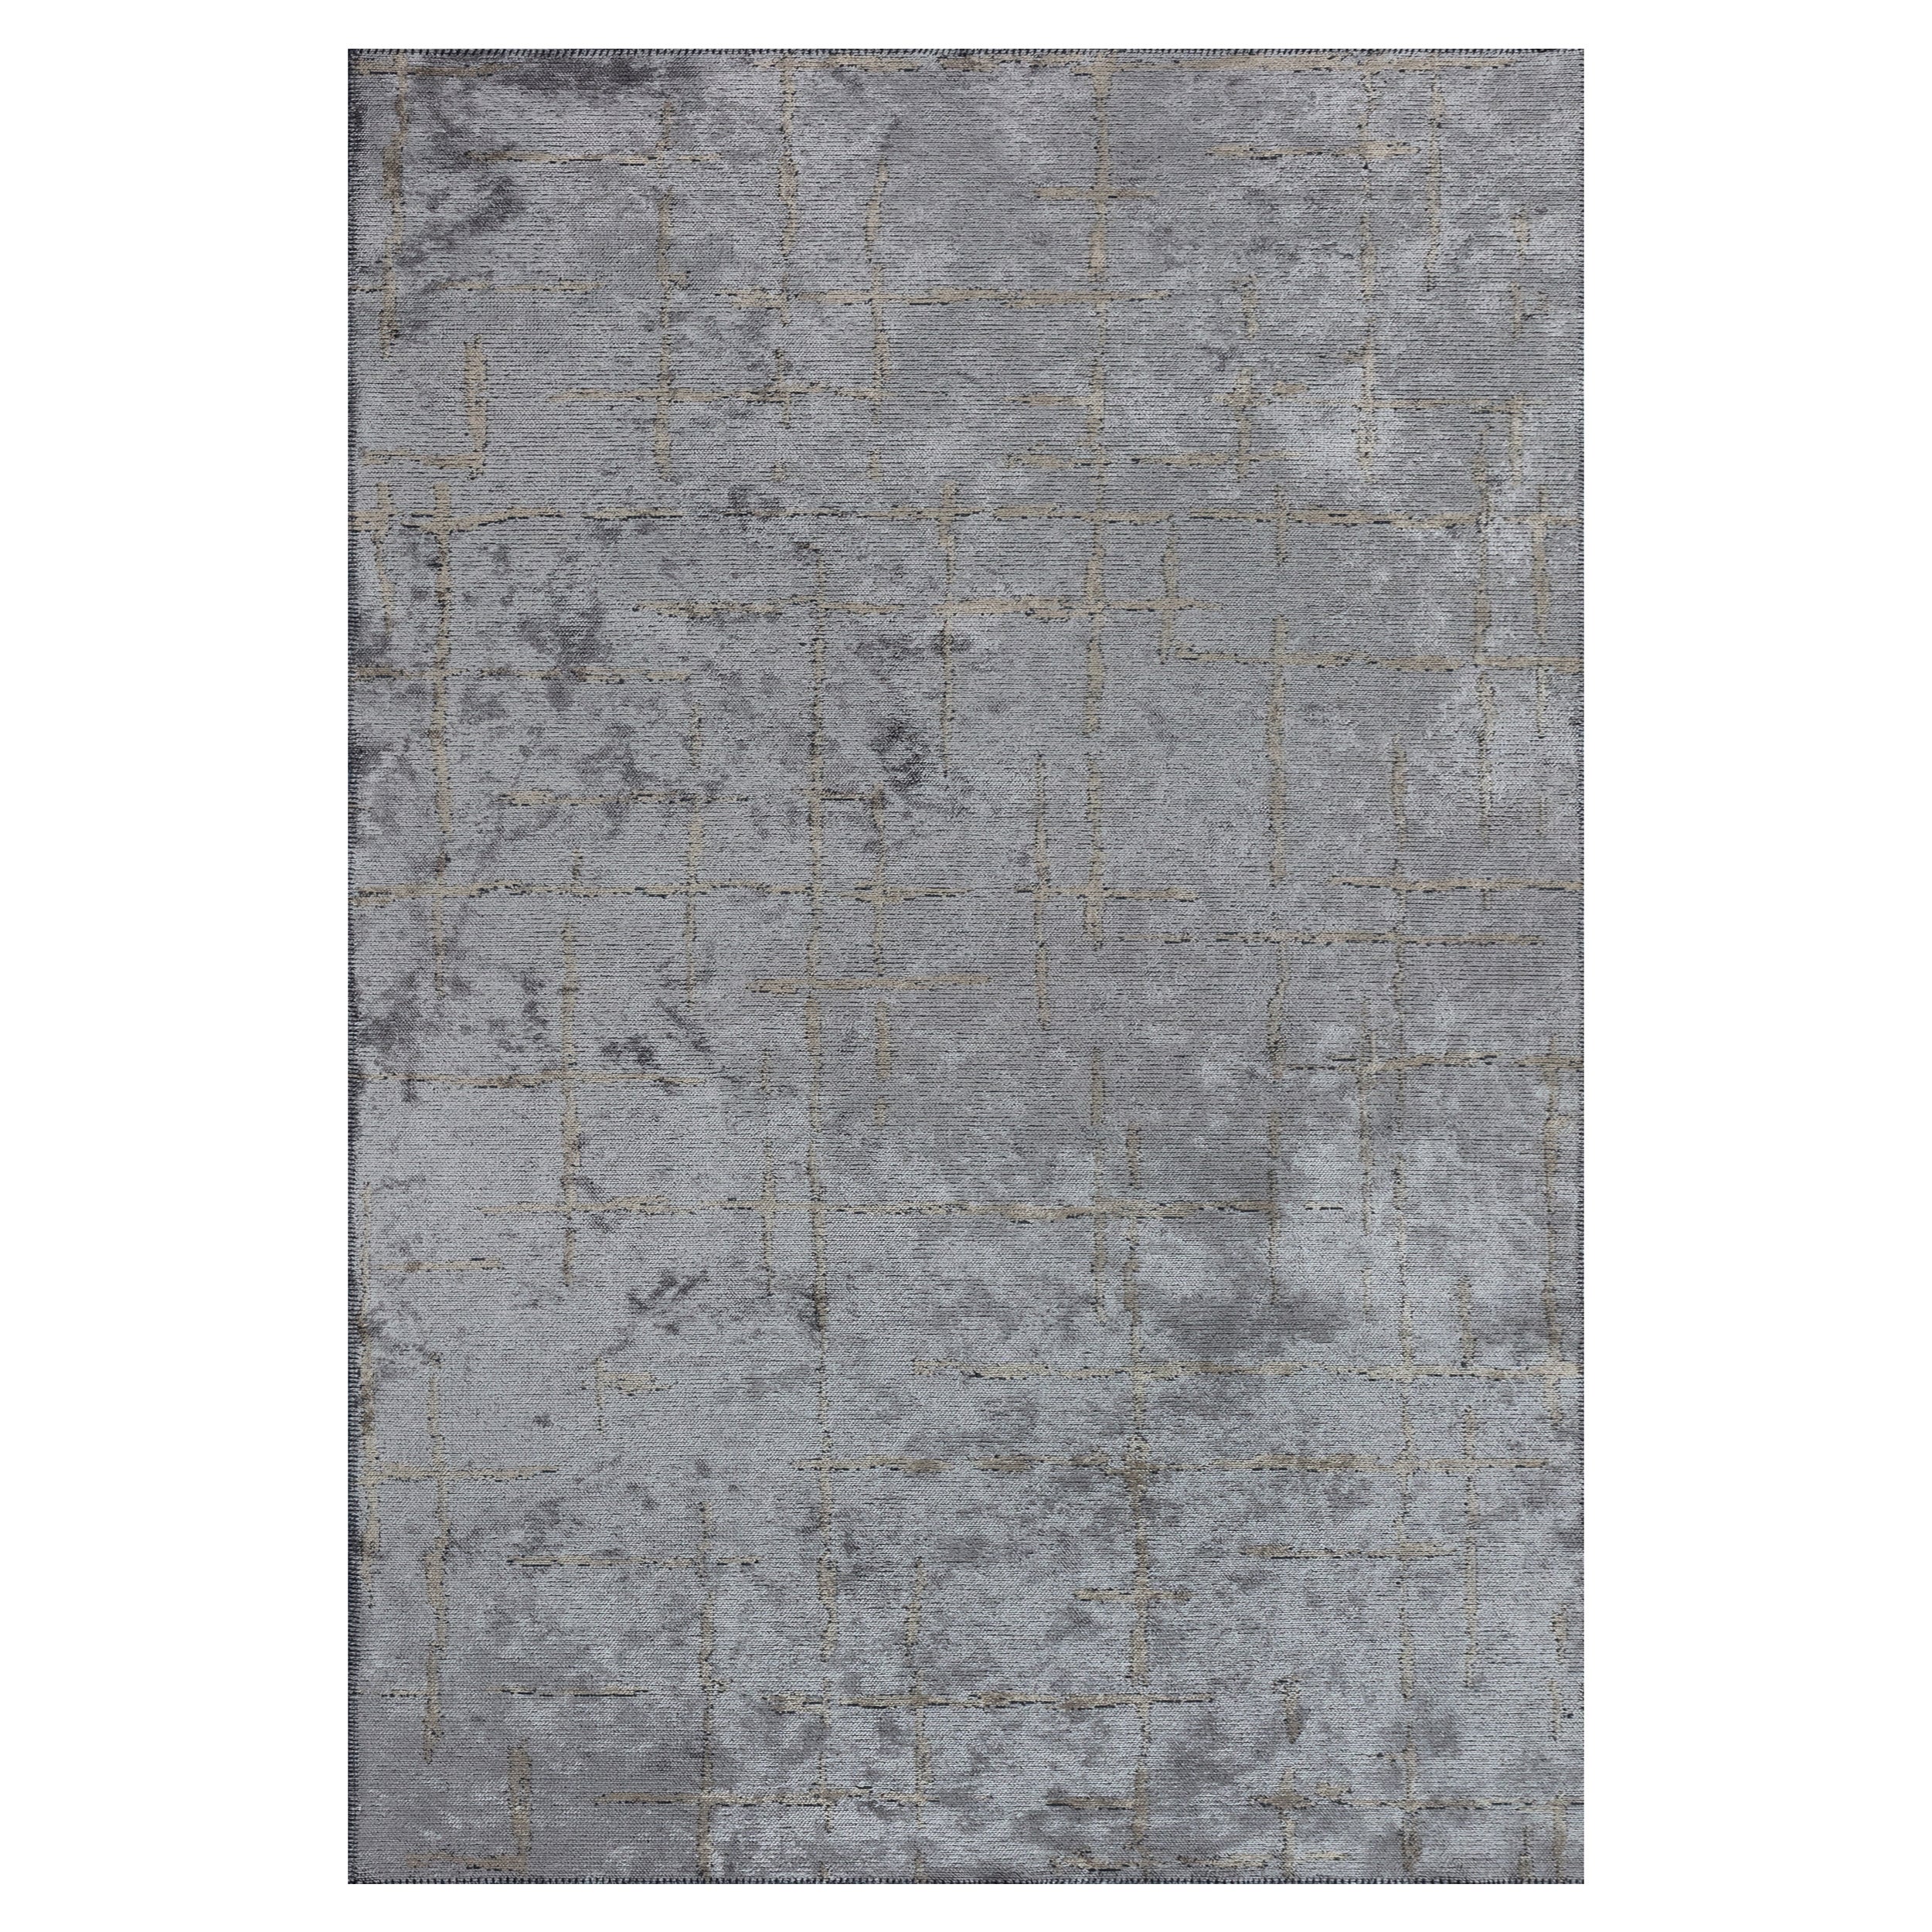 Tapis de couloir de galerie contemporain gris et beige, en stock